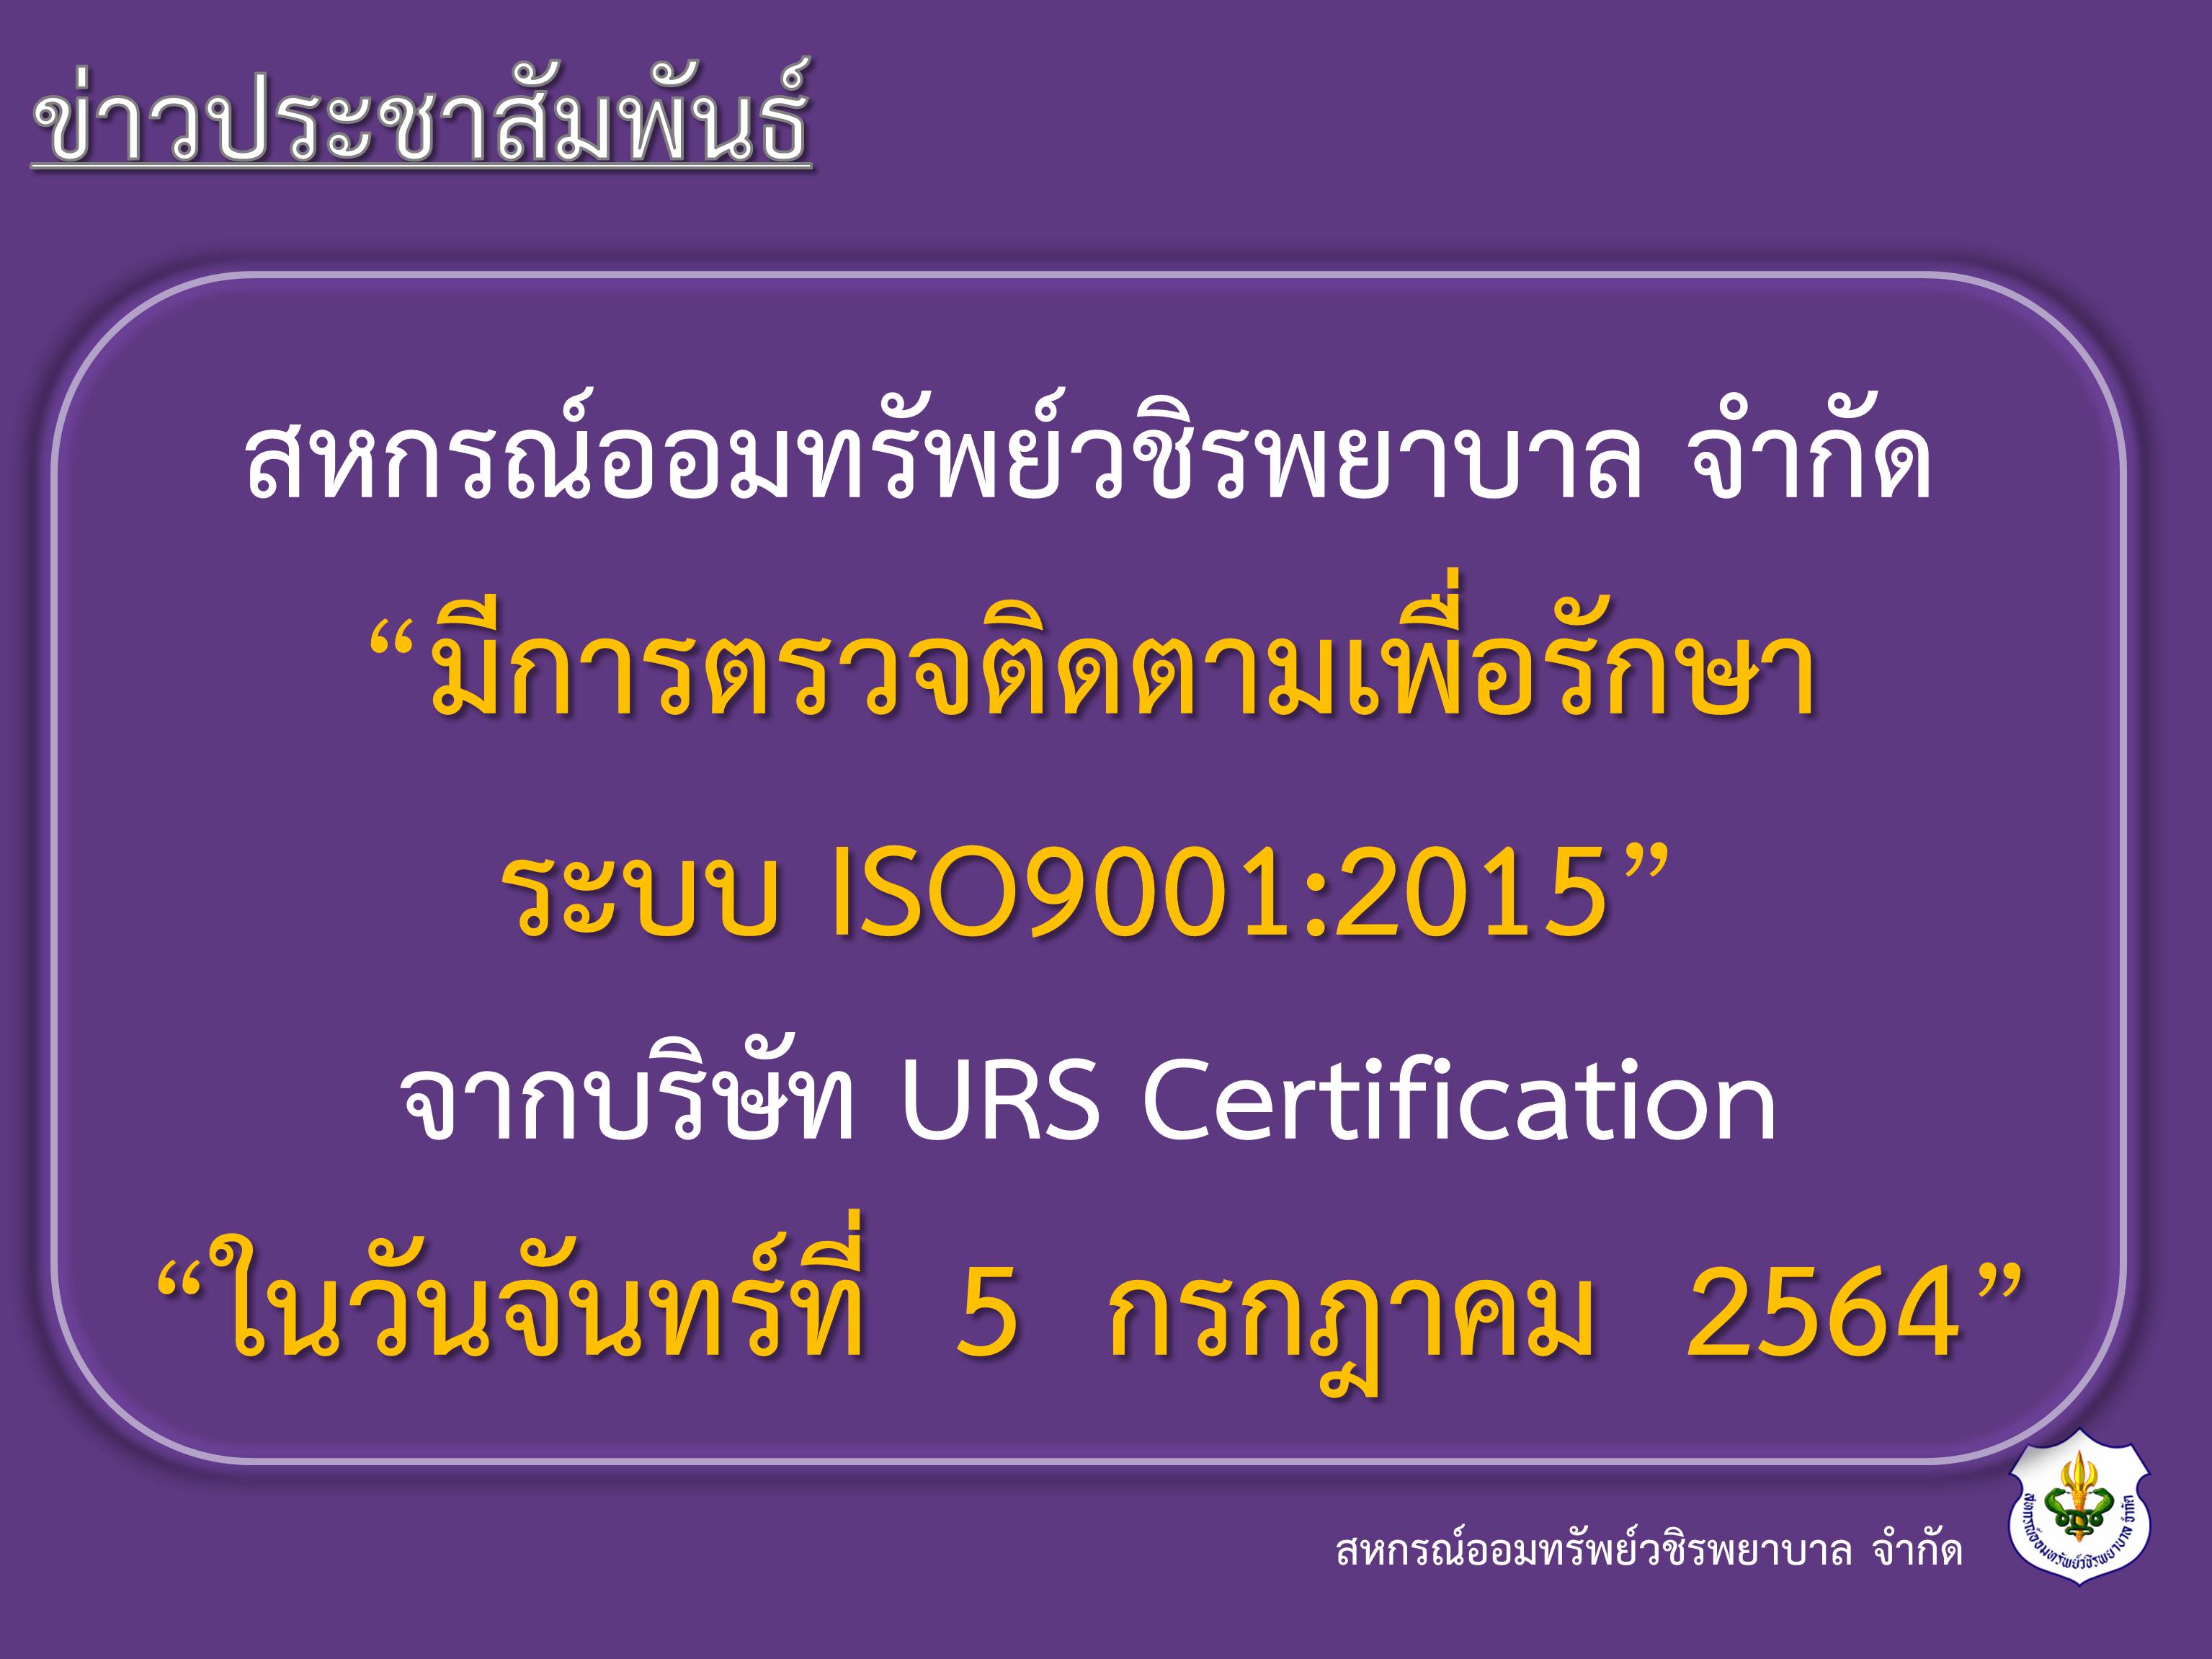 การตรวจติดตามเพื่อรักษาระบบ ISO9001:2015